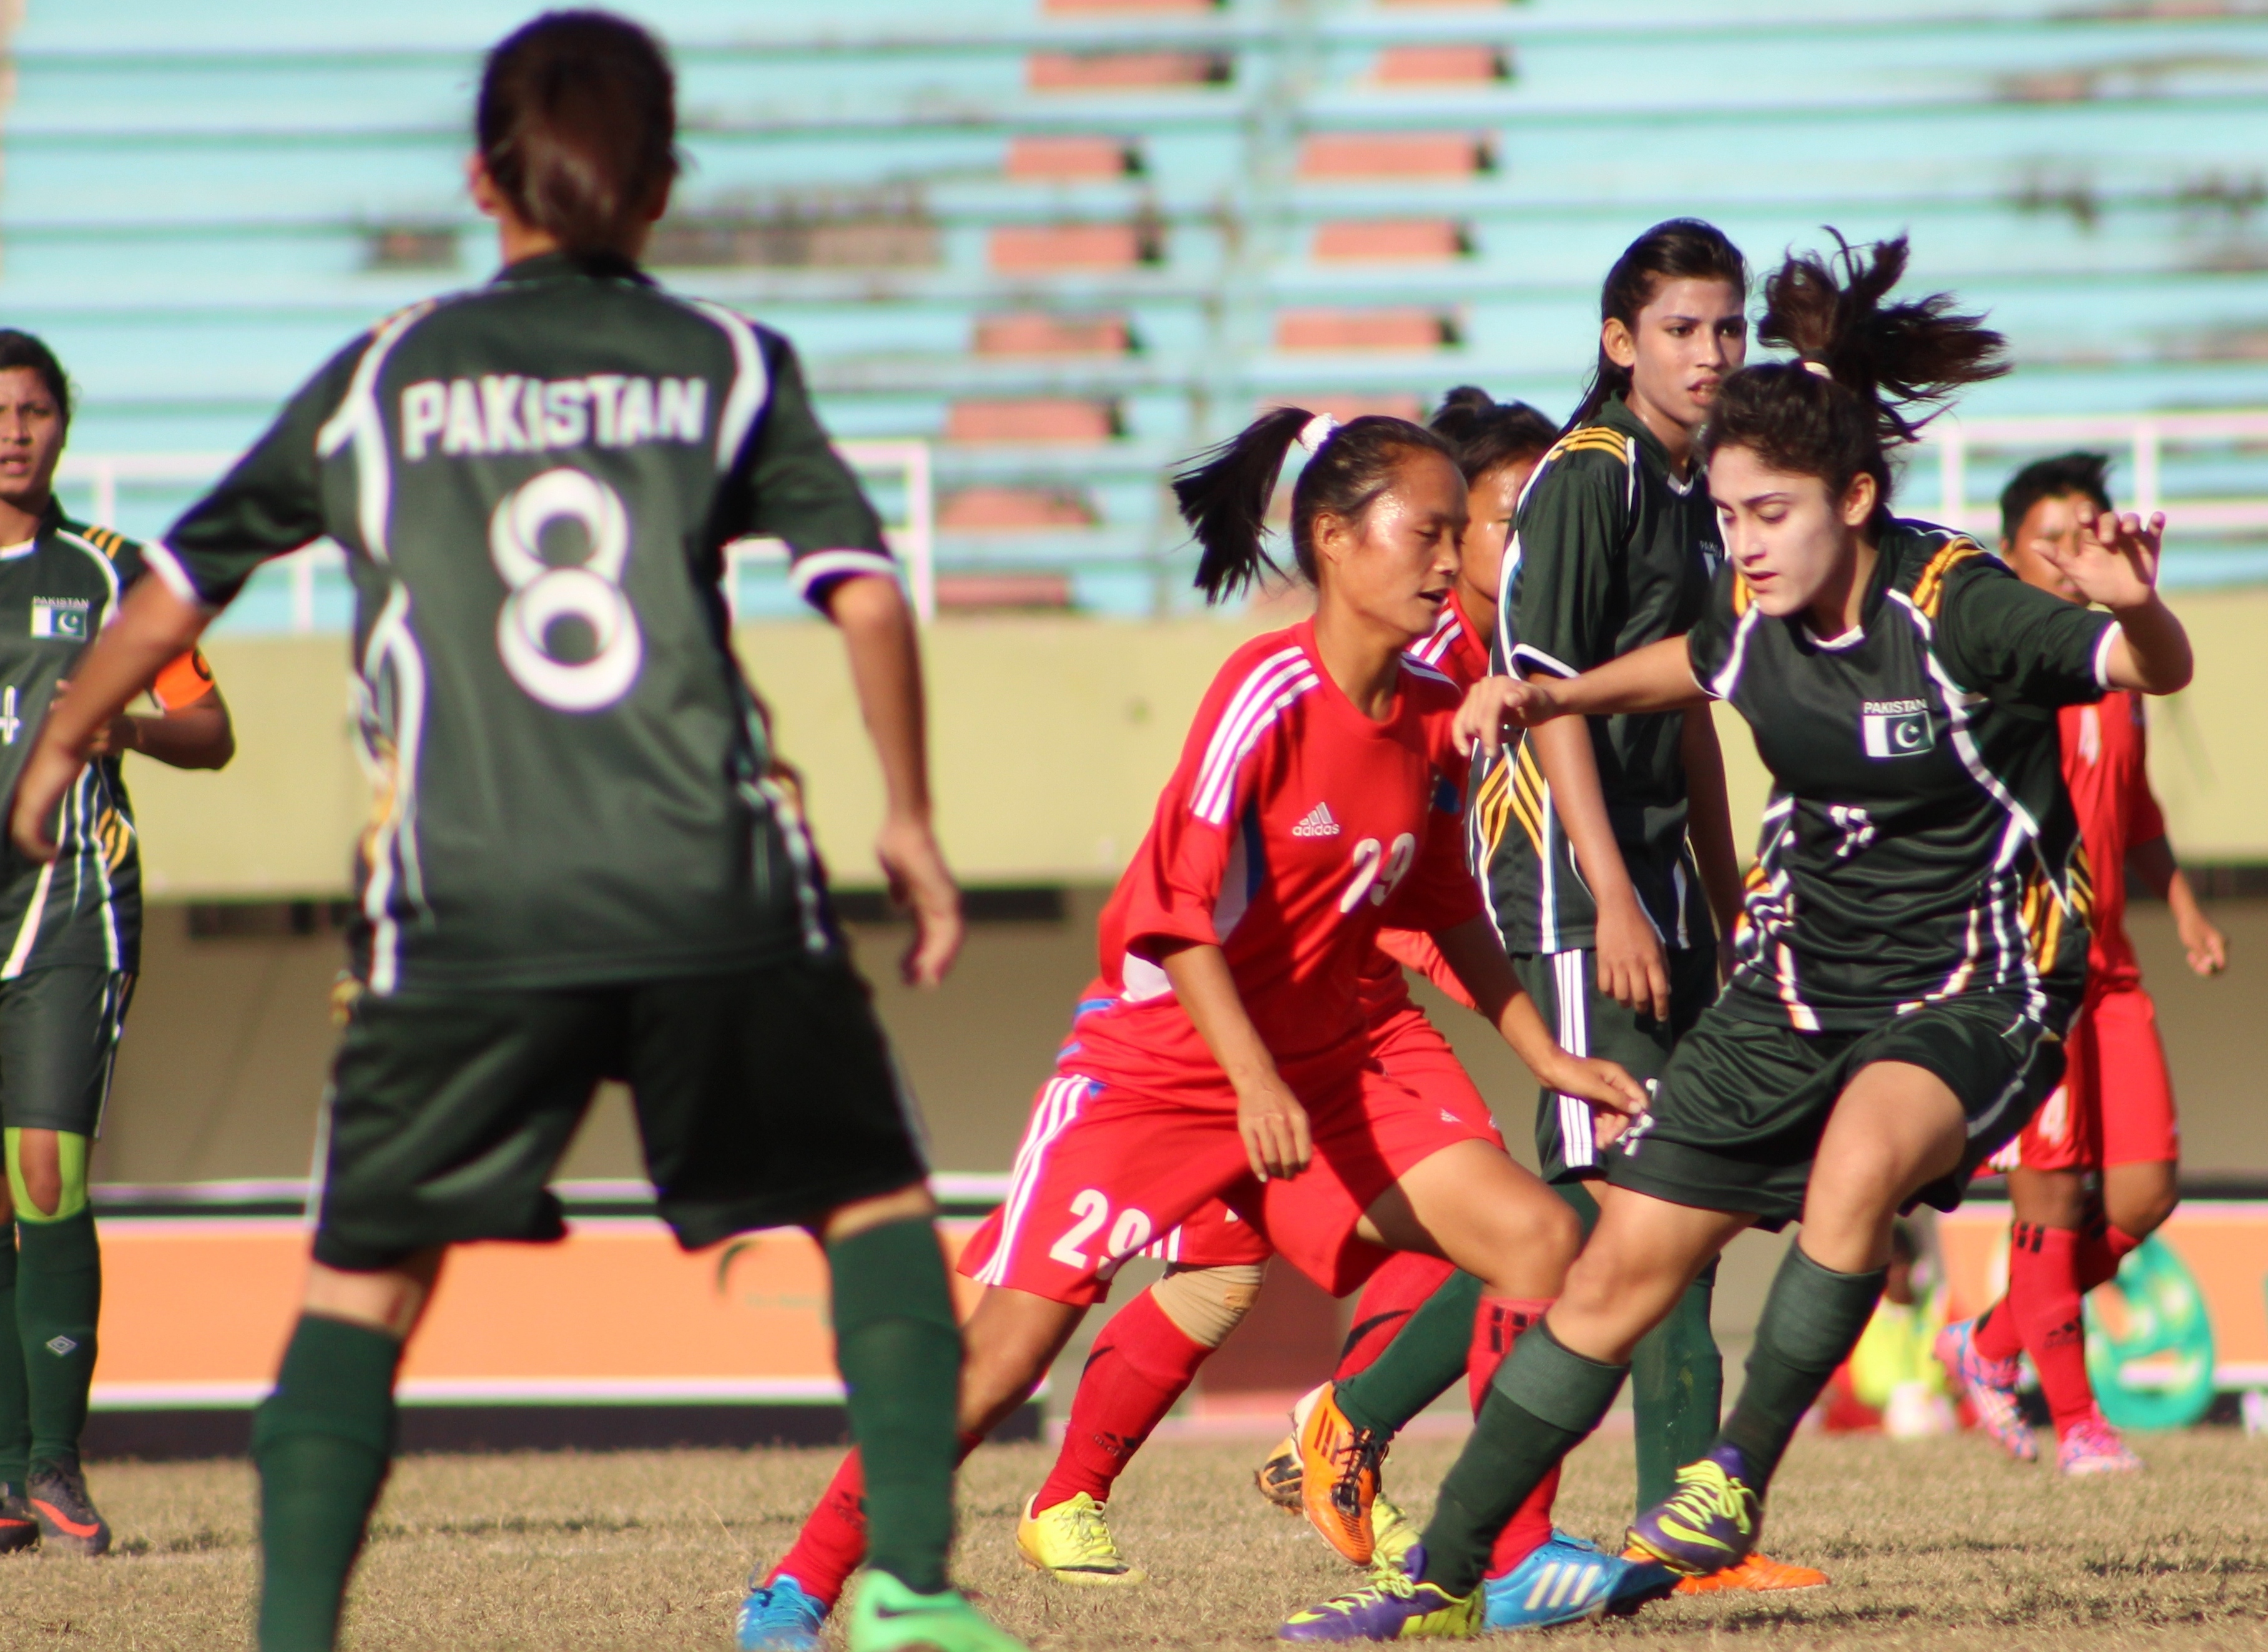 SAFF Women’s Championship: Superior Nepal oust lackluster Pakistan